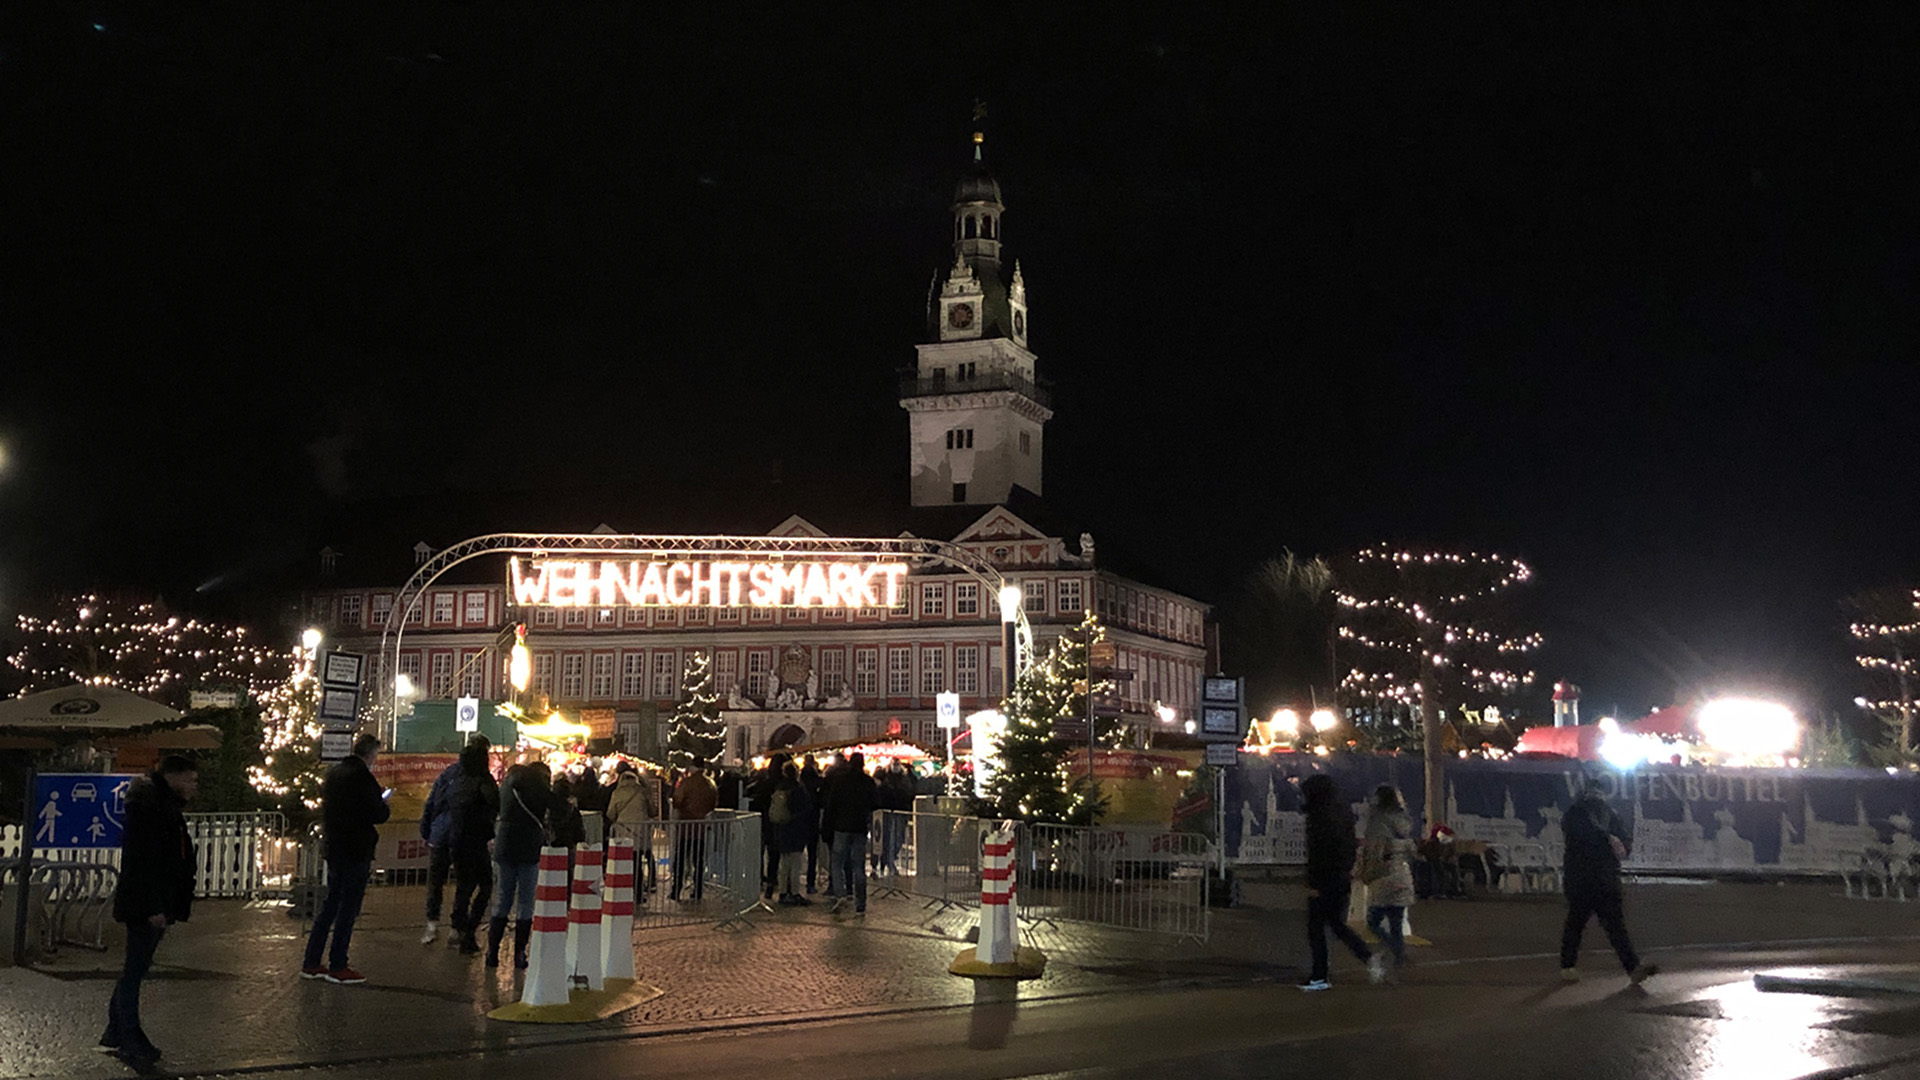 Im Dunklen leuchtet der Schriftzug Weihnachtsmarkt über einigen Verkaufsständen auf der Weihnachtsmarkt, im Hintergrund erkennt man das Wolfenbütteler Schloss. Der Weihnachtsmarkt ist eingezäunt, der Eingang mit rotweißen Pfeilern markiert.